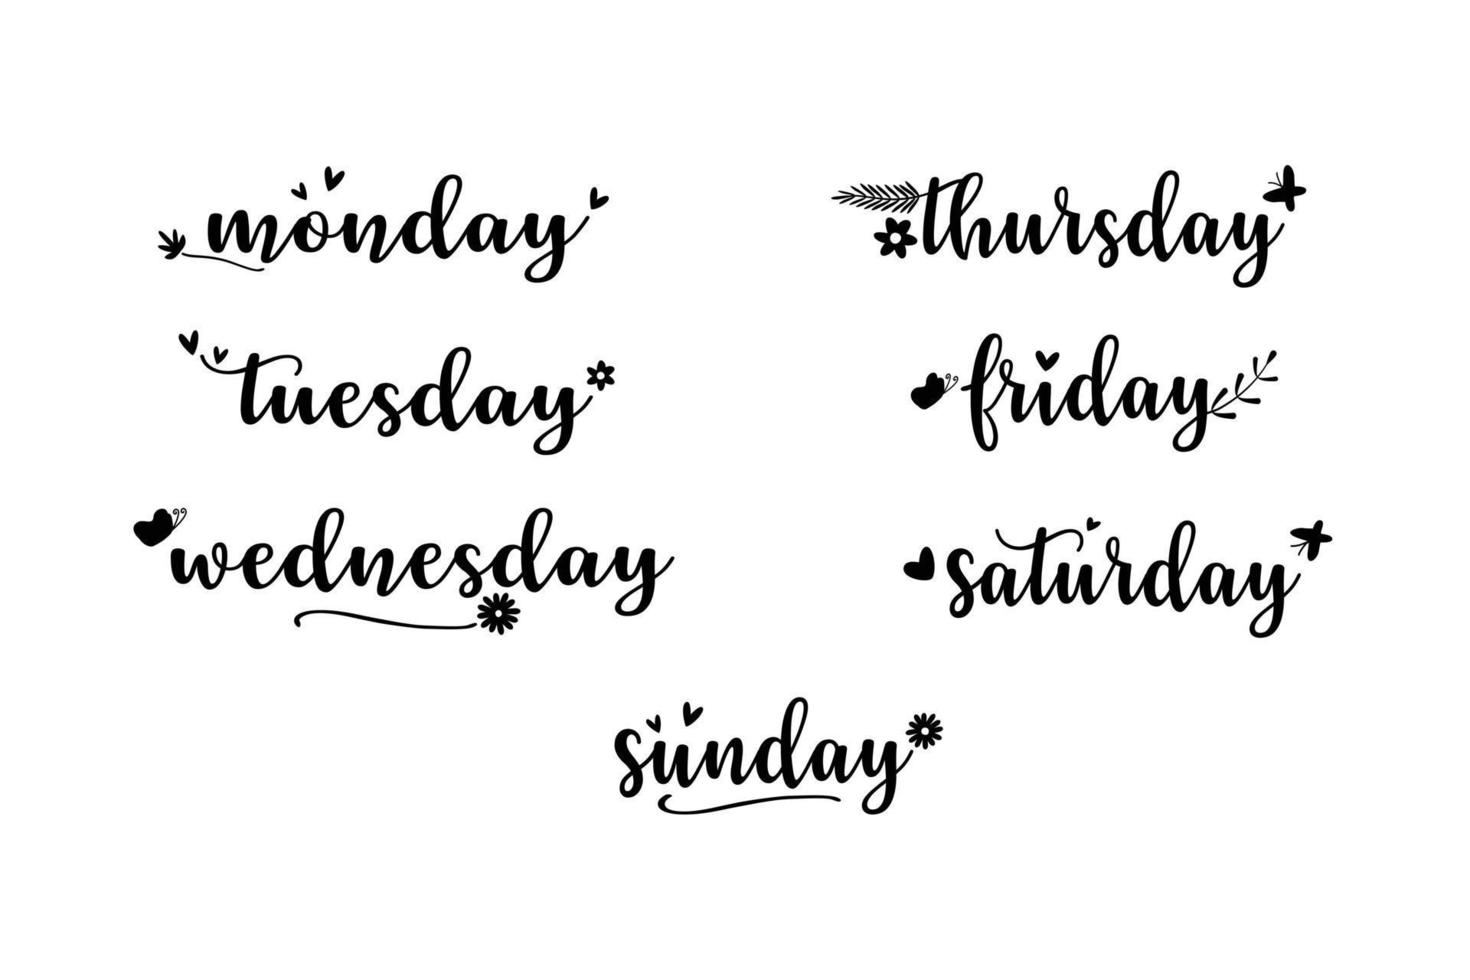 Vektor - handgeschriebener Wochentag. Montag, Dienstag, Mittwoch, Donnerstag, Freitag, Samstag und Sonntag. schwarze Farbe. kann verwendet werden, um Tagebuch, Planer, Kalender zu dekorieren.